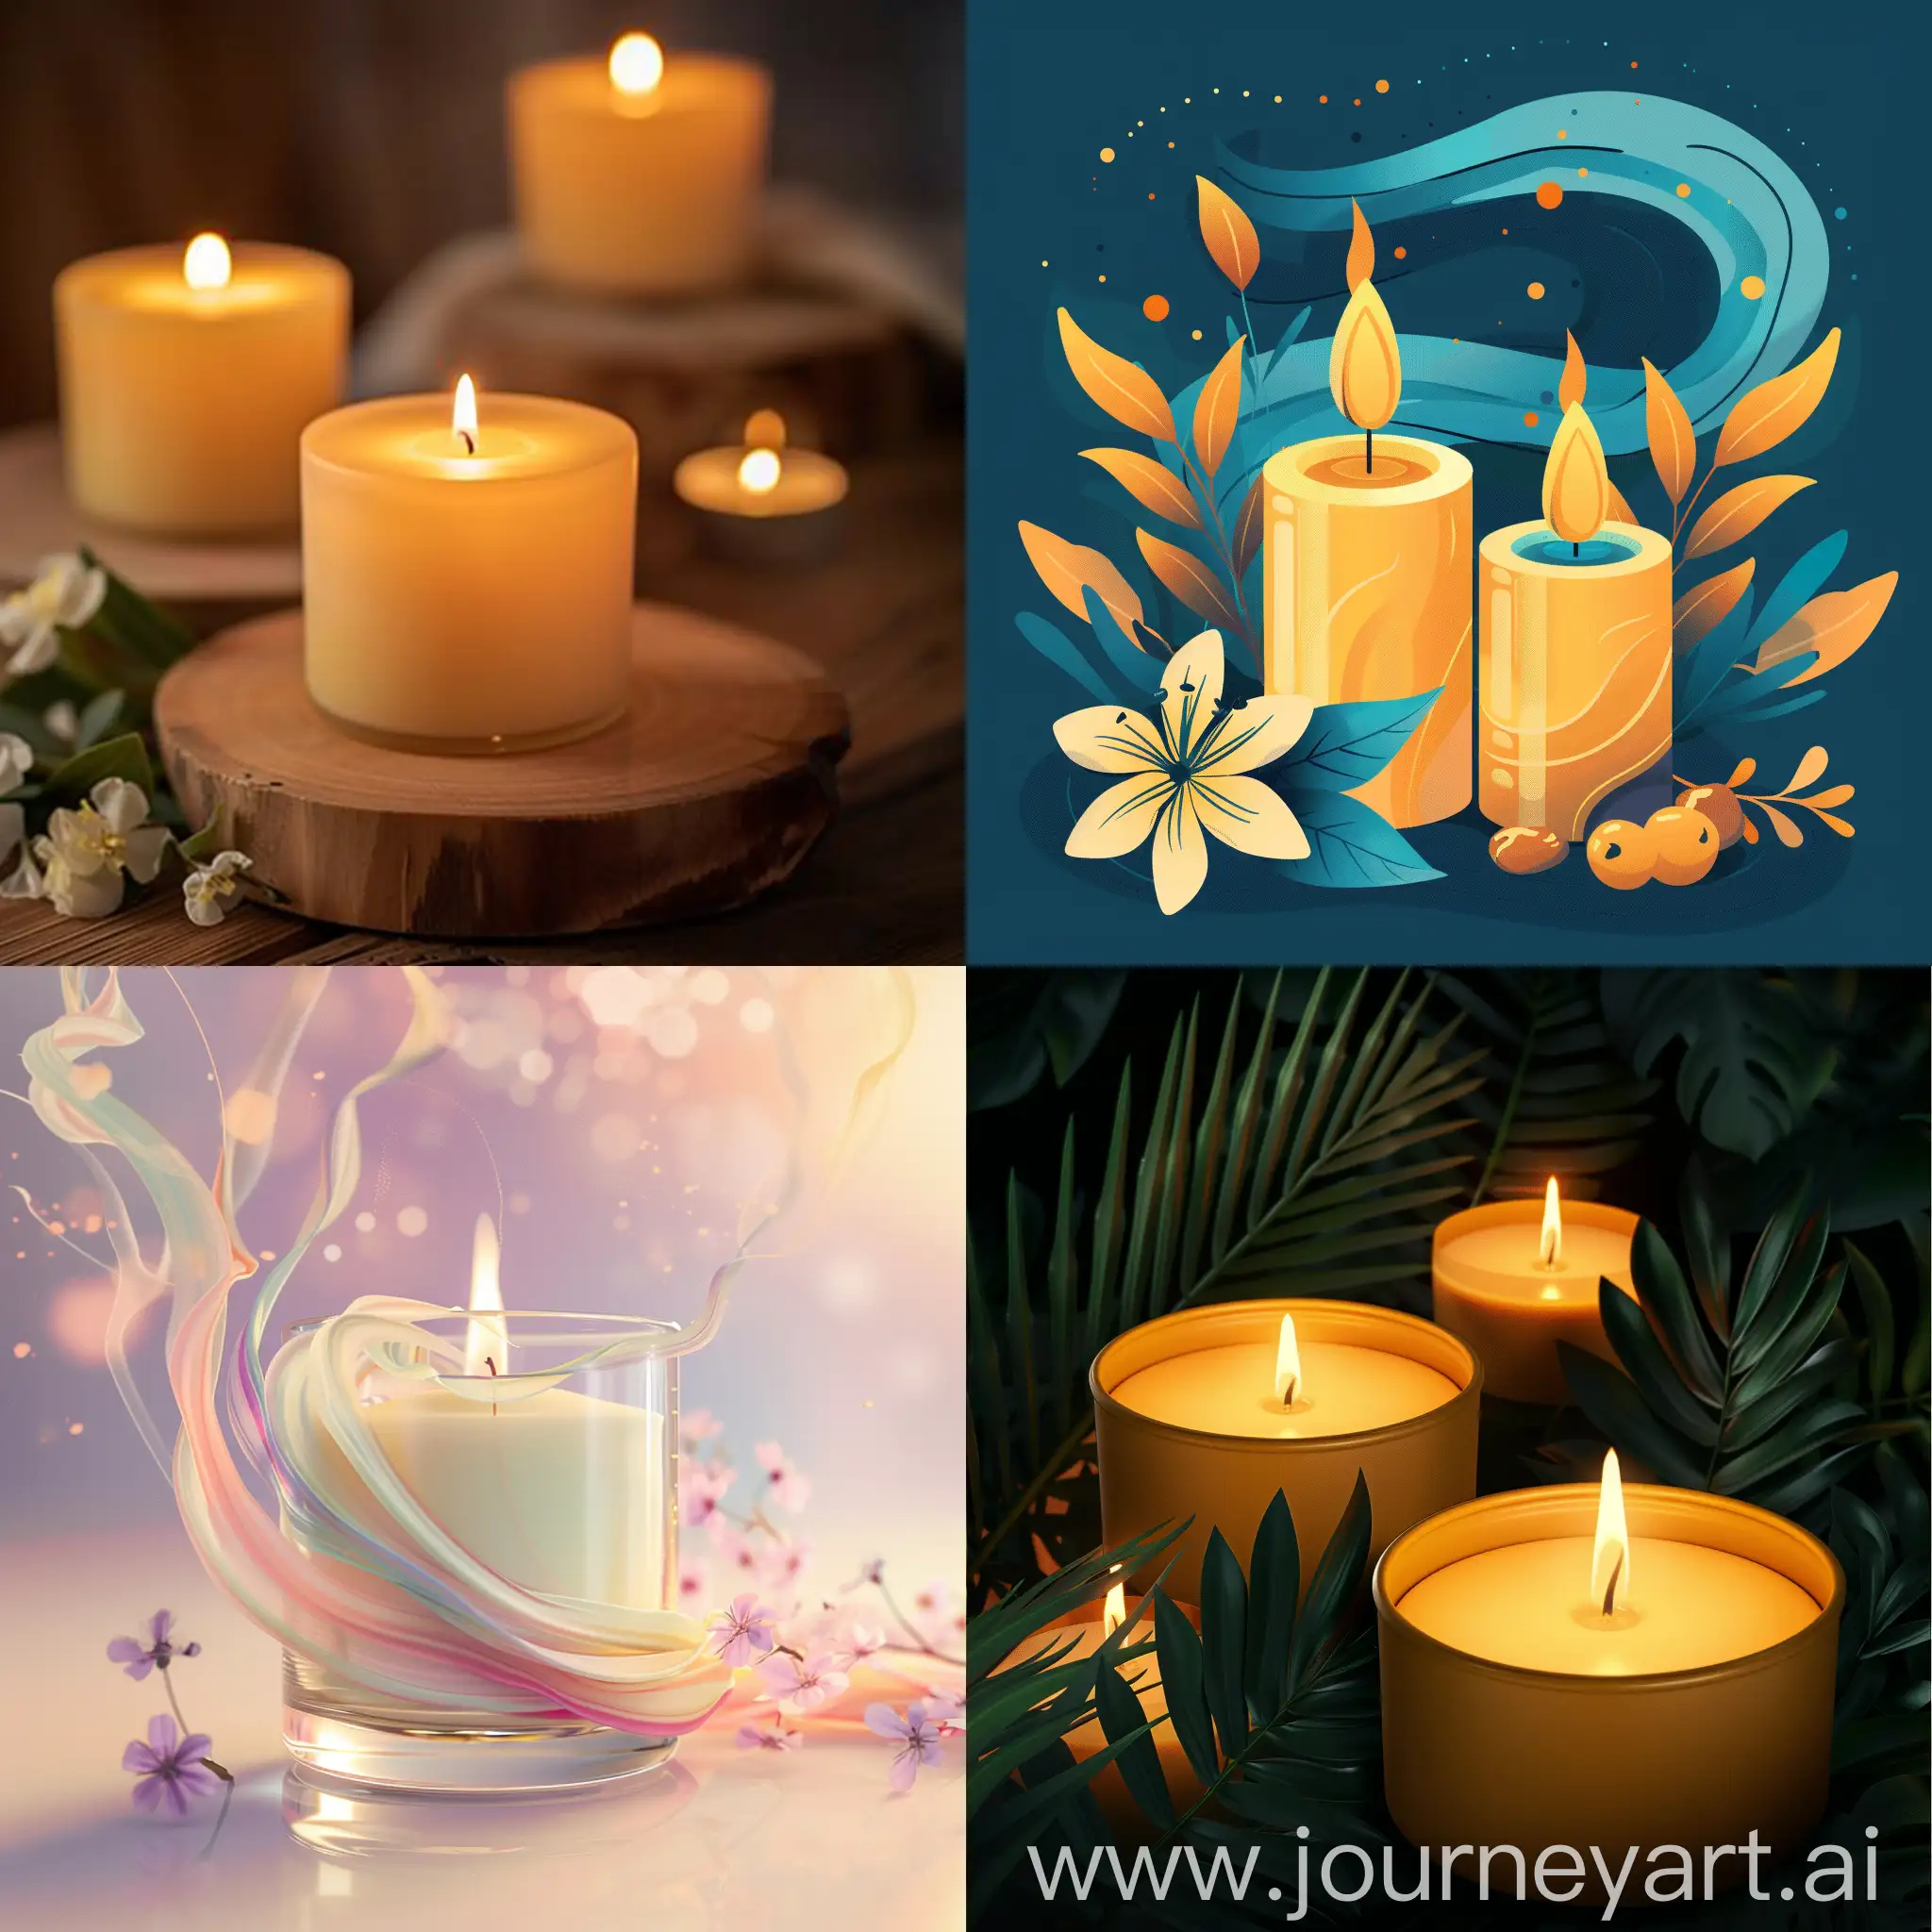 аватар для профиля компании производящий ароматические свечи